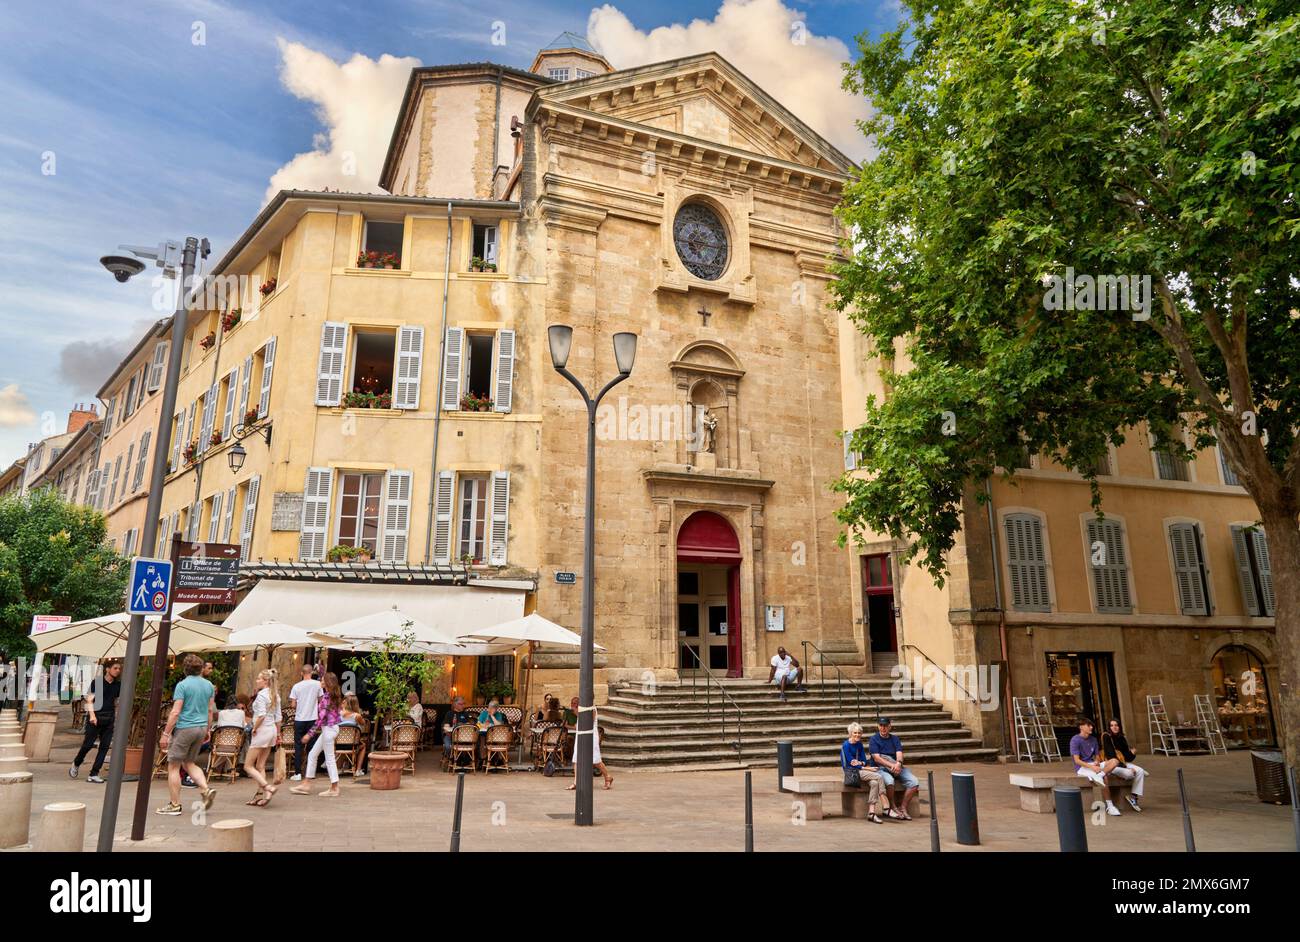 Maison de Fondation des Missionnaires Oblats, Place Forbin, Aix-en-Provence, Bouches-du-Rhône, Provence, Provence-Alpes-Côte d'Azur, France, Europe. Stock Photo